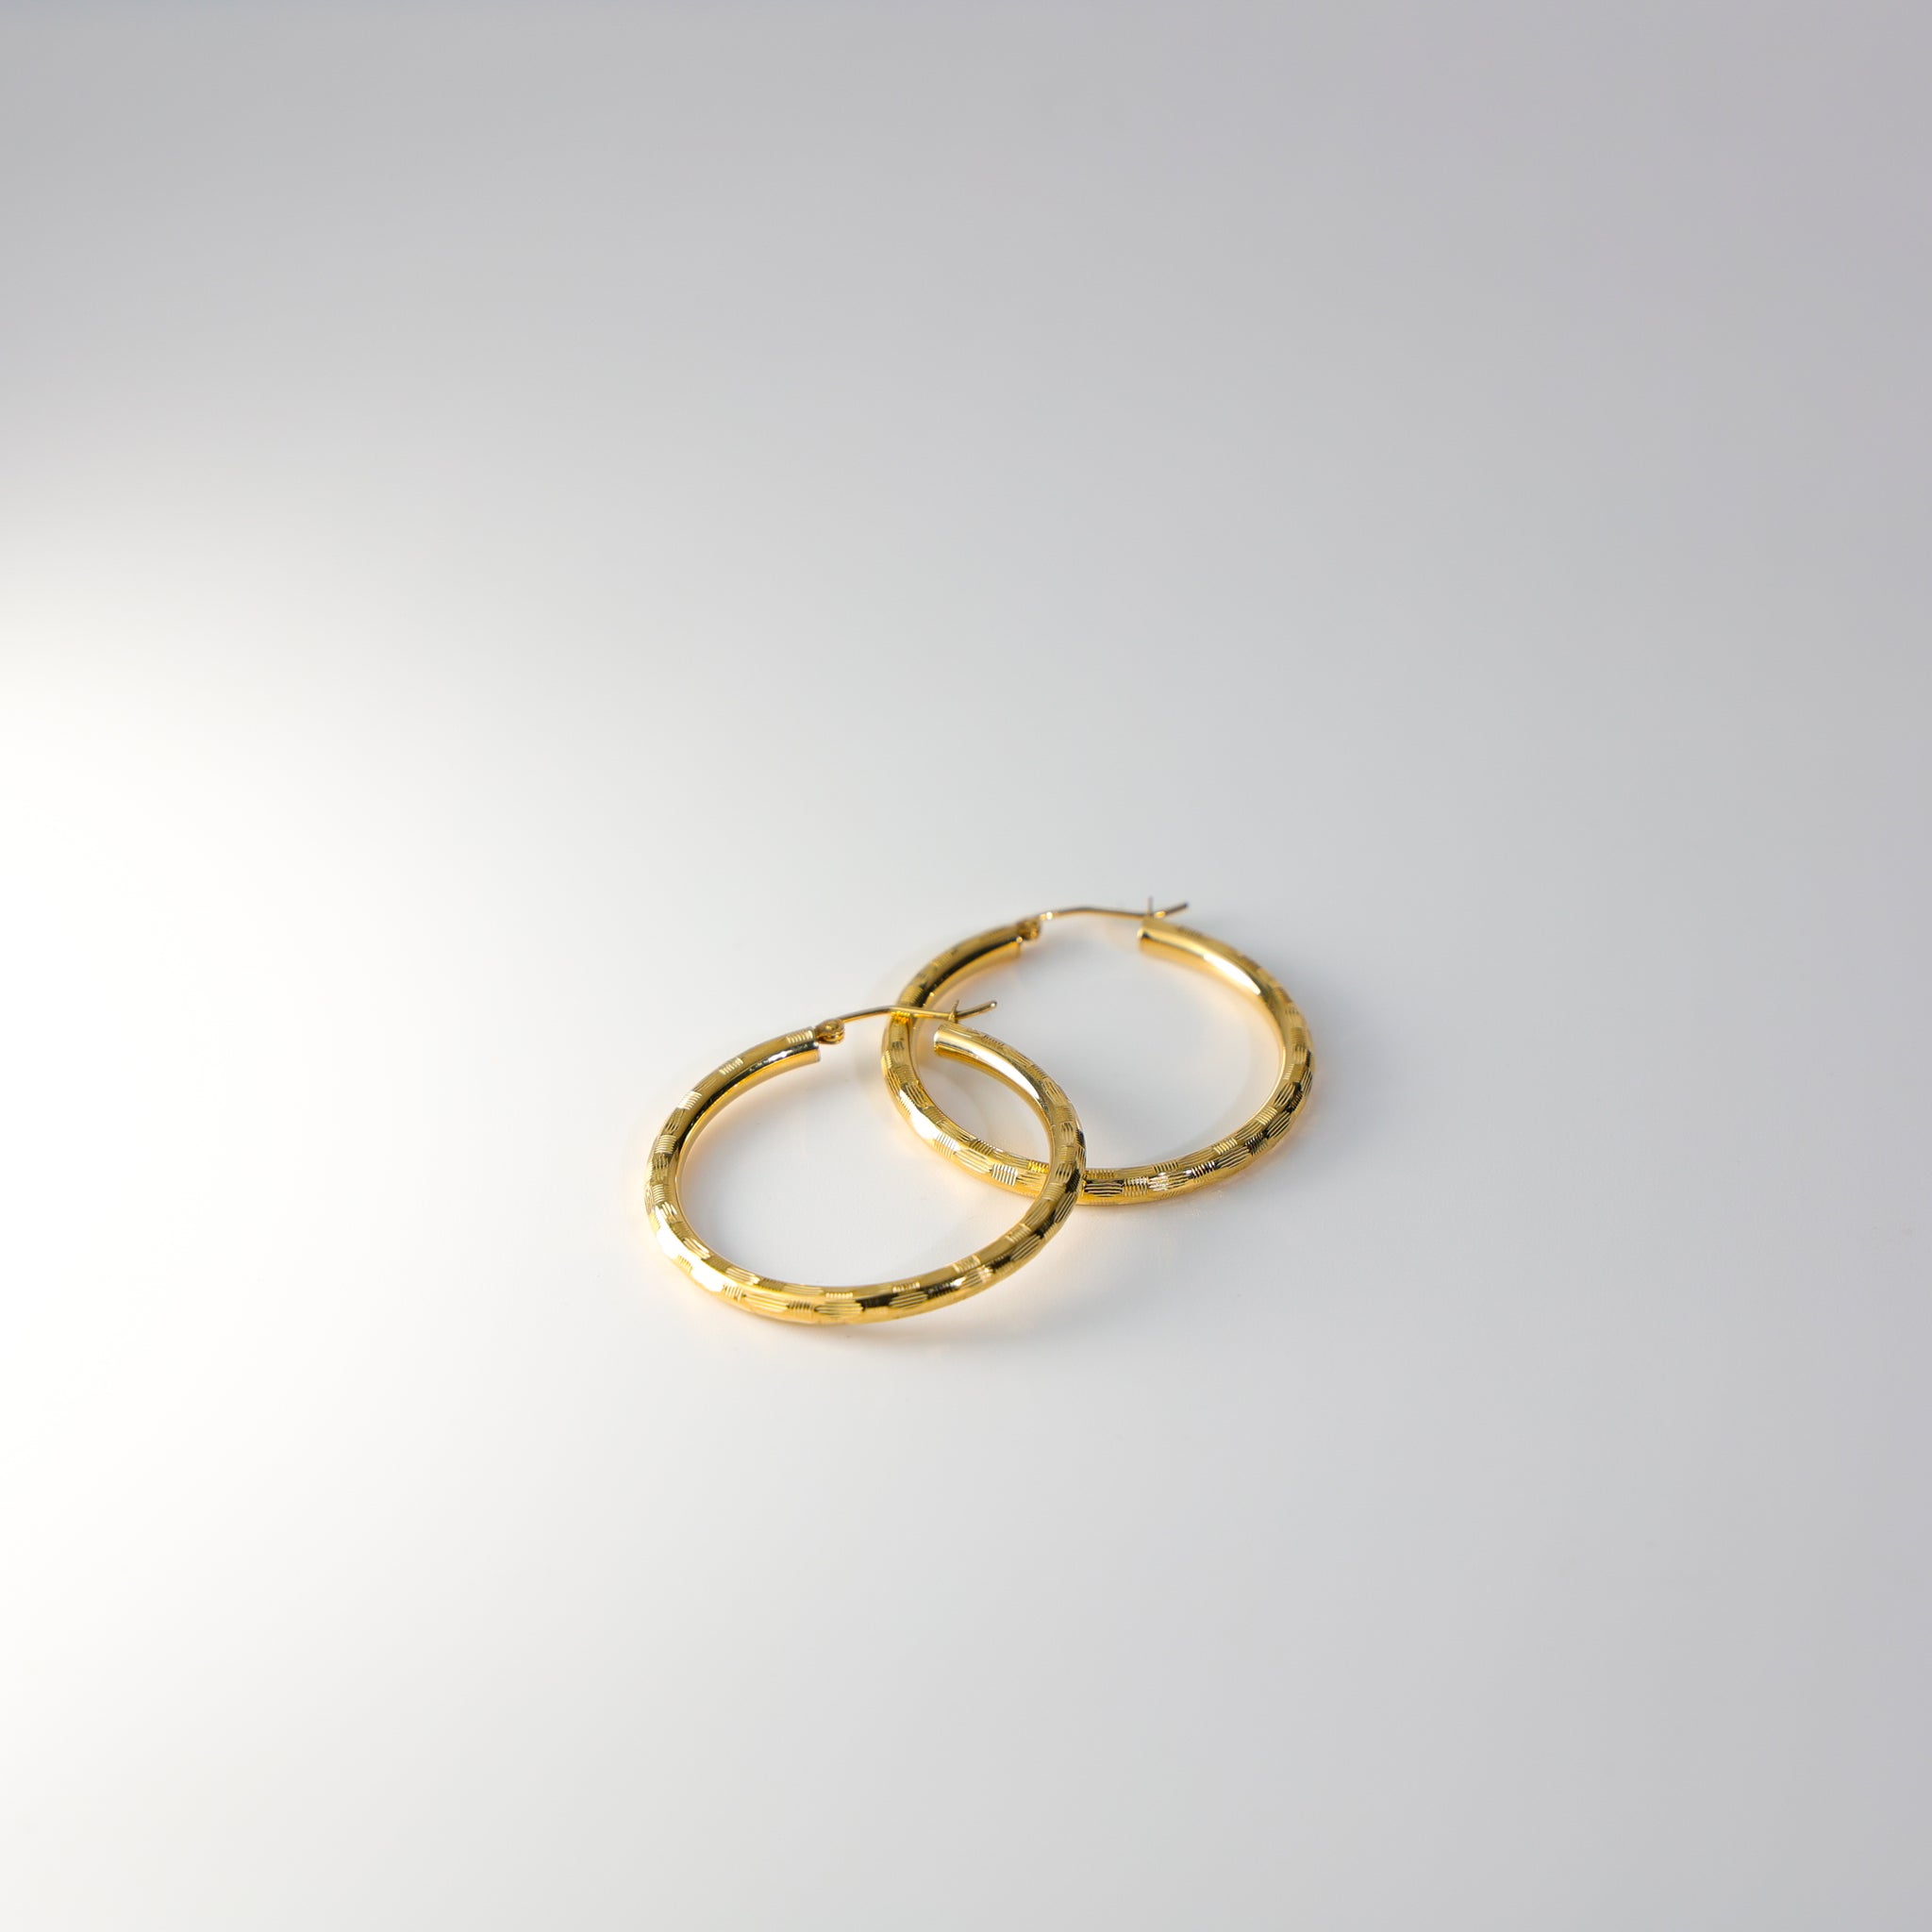 Gold Diamond Cut Hoop Earrings 30 MM Wide Model-1014 - Charlie & Co. Jewelry